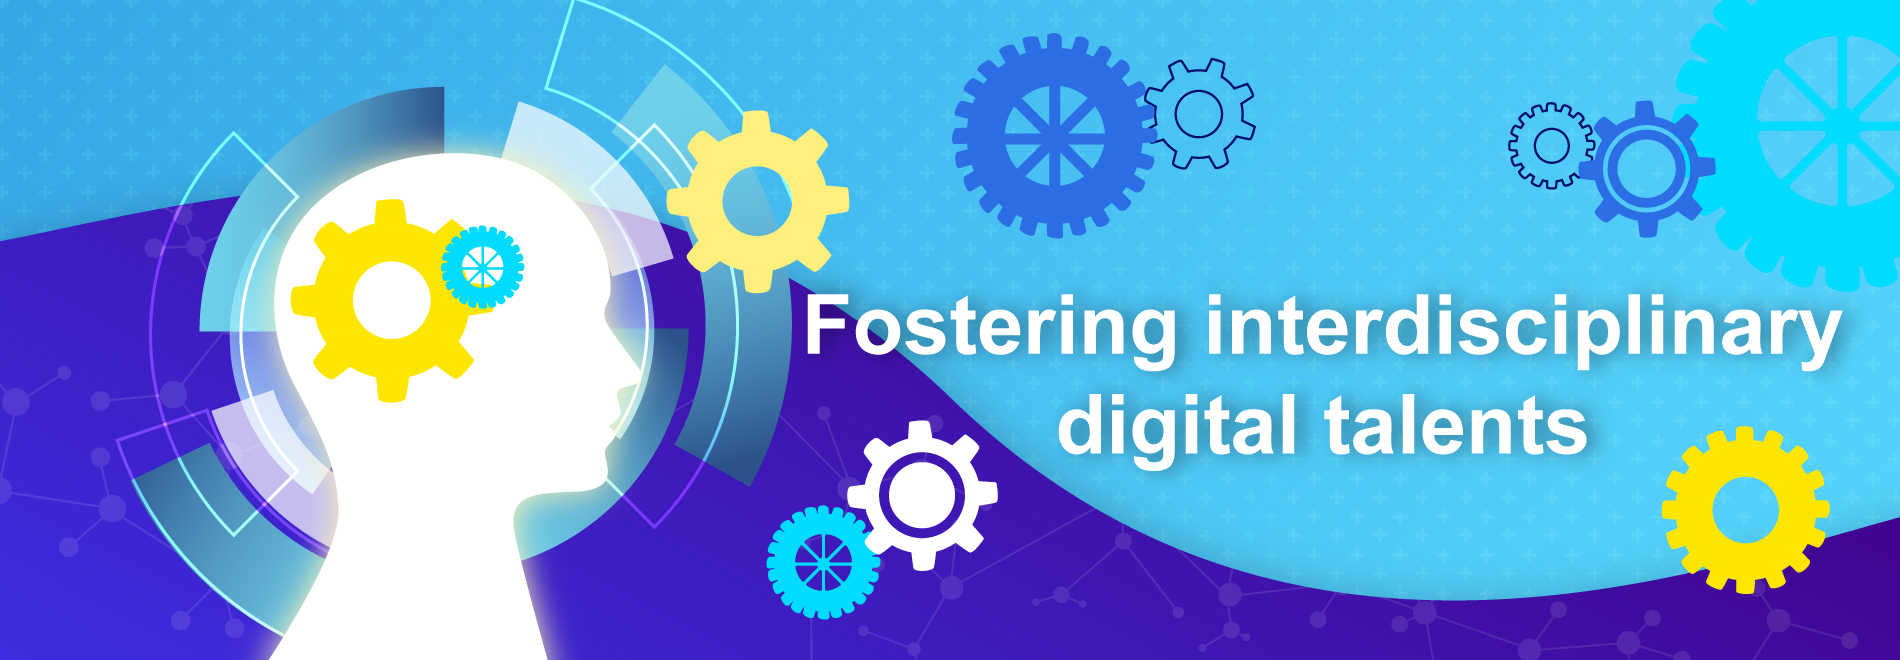 Foster interdisciplinary digital talents